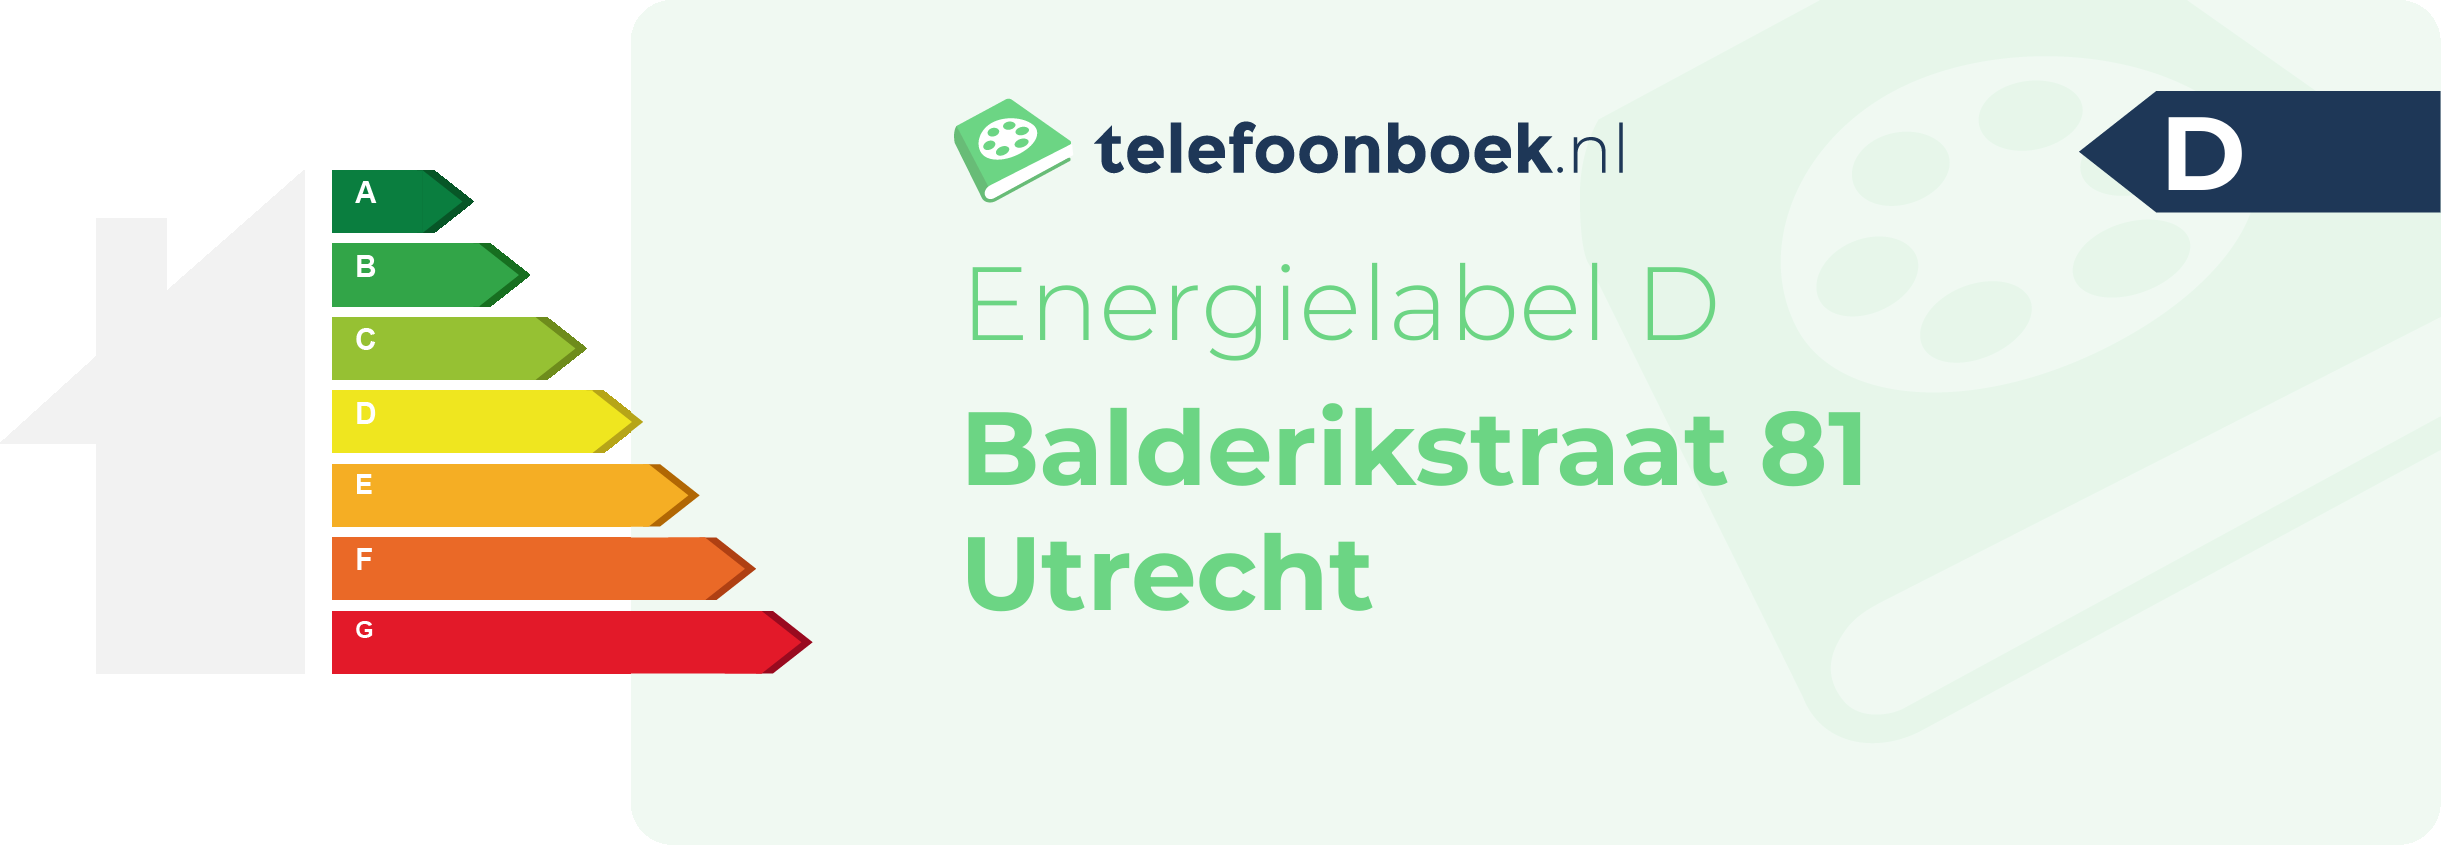 Energielabel Balderikstraat 81 Utrecht